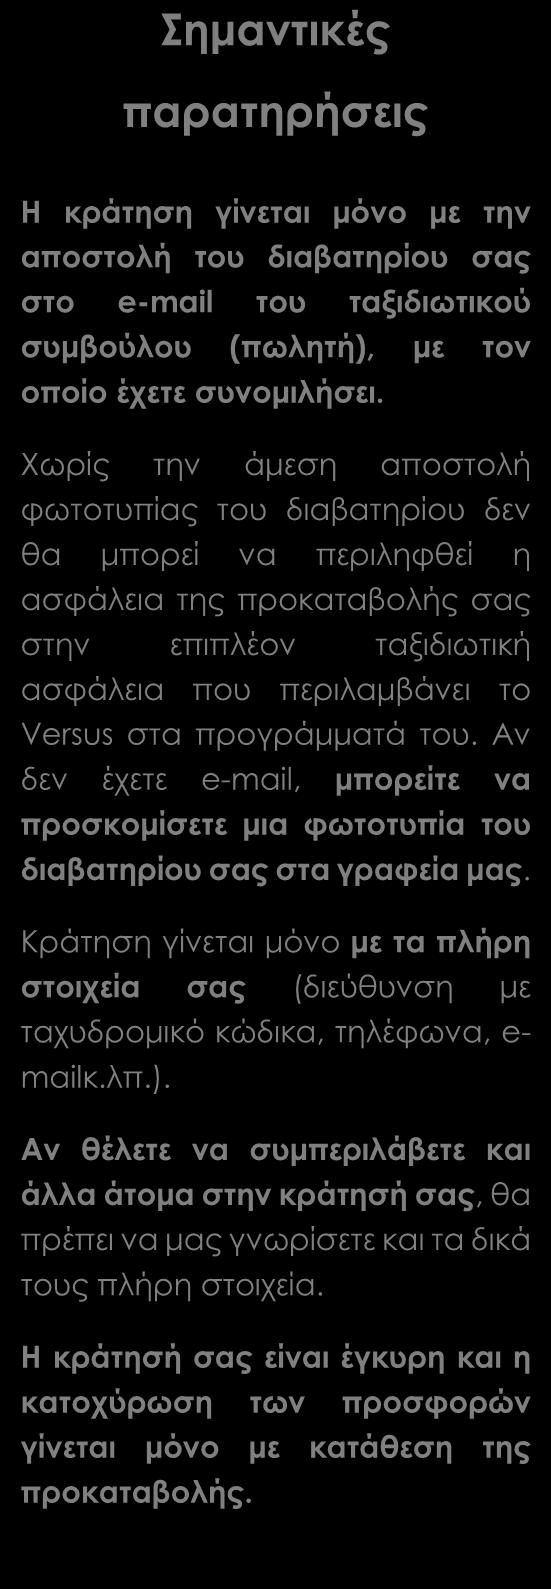 Ασφάλεια αστικής ευθύνης. Δωρεάν ταξιδιωτικός οδηγός - βιβλίο στα Ελληνικά Versus Travel.